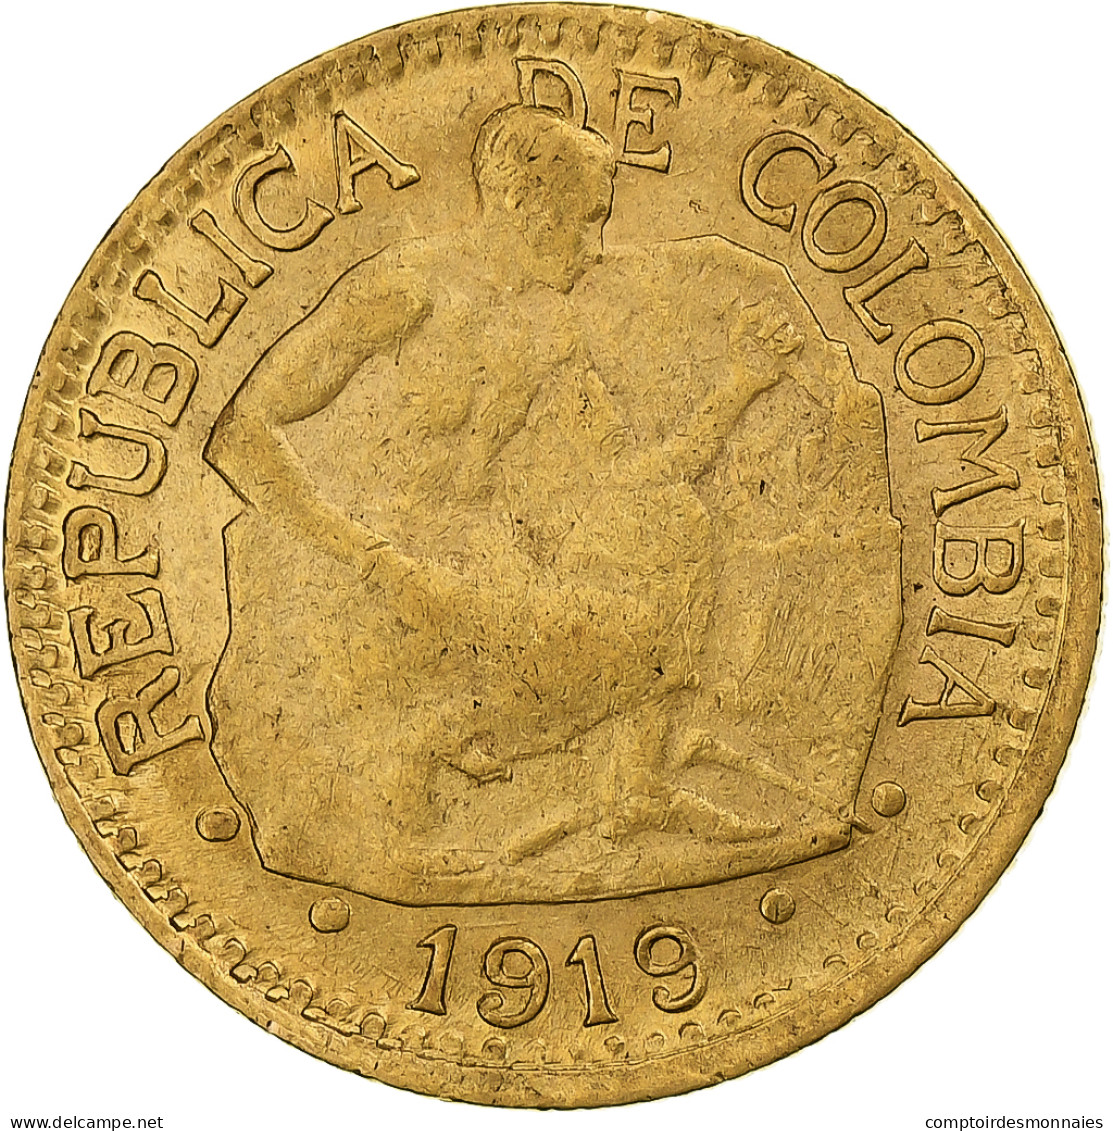 Colombie, 5 Pesos, 1919, Bogota, Or, TTB - Colombia